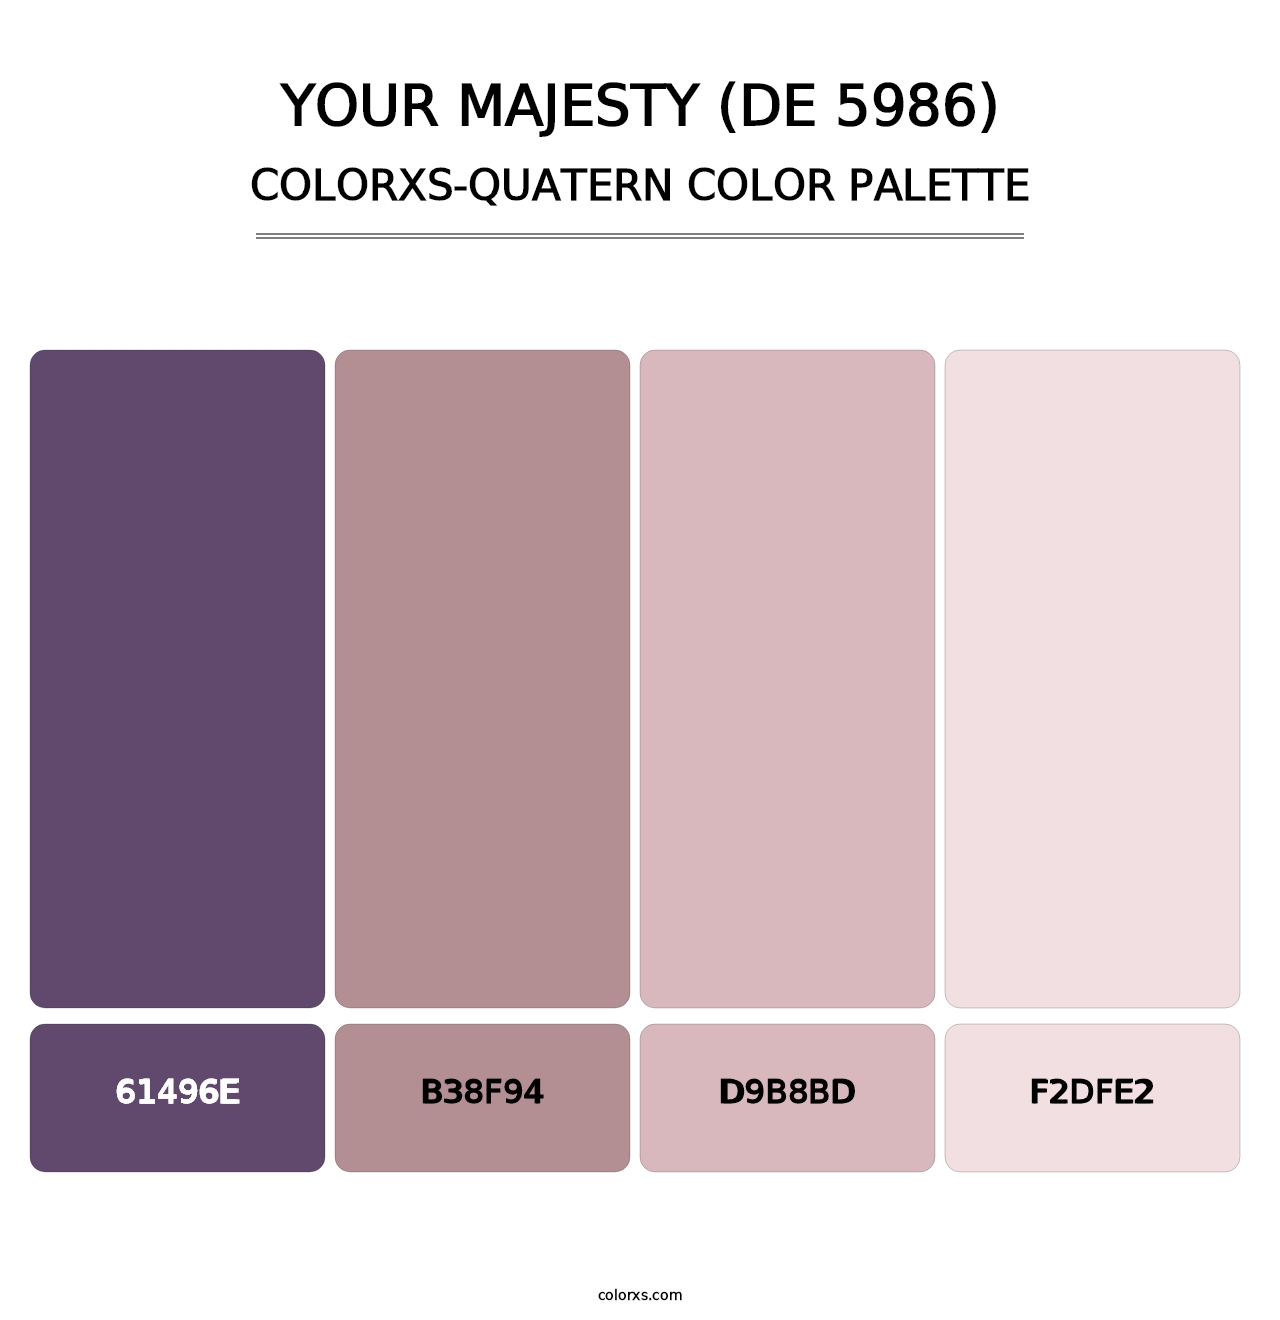 Your Majesty (DE 5986) - Colorxs Quatern Palette